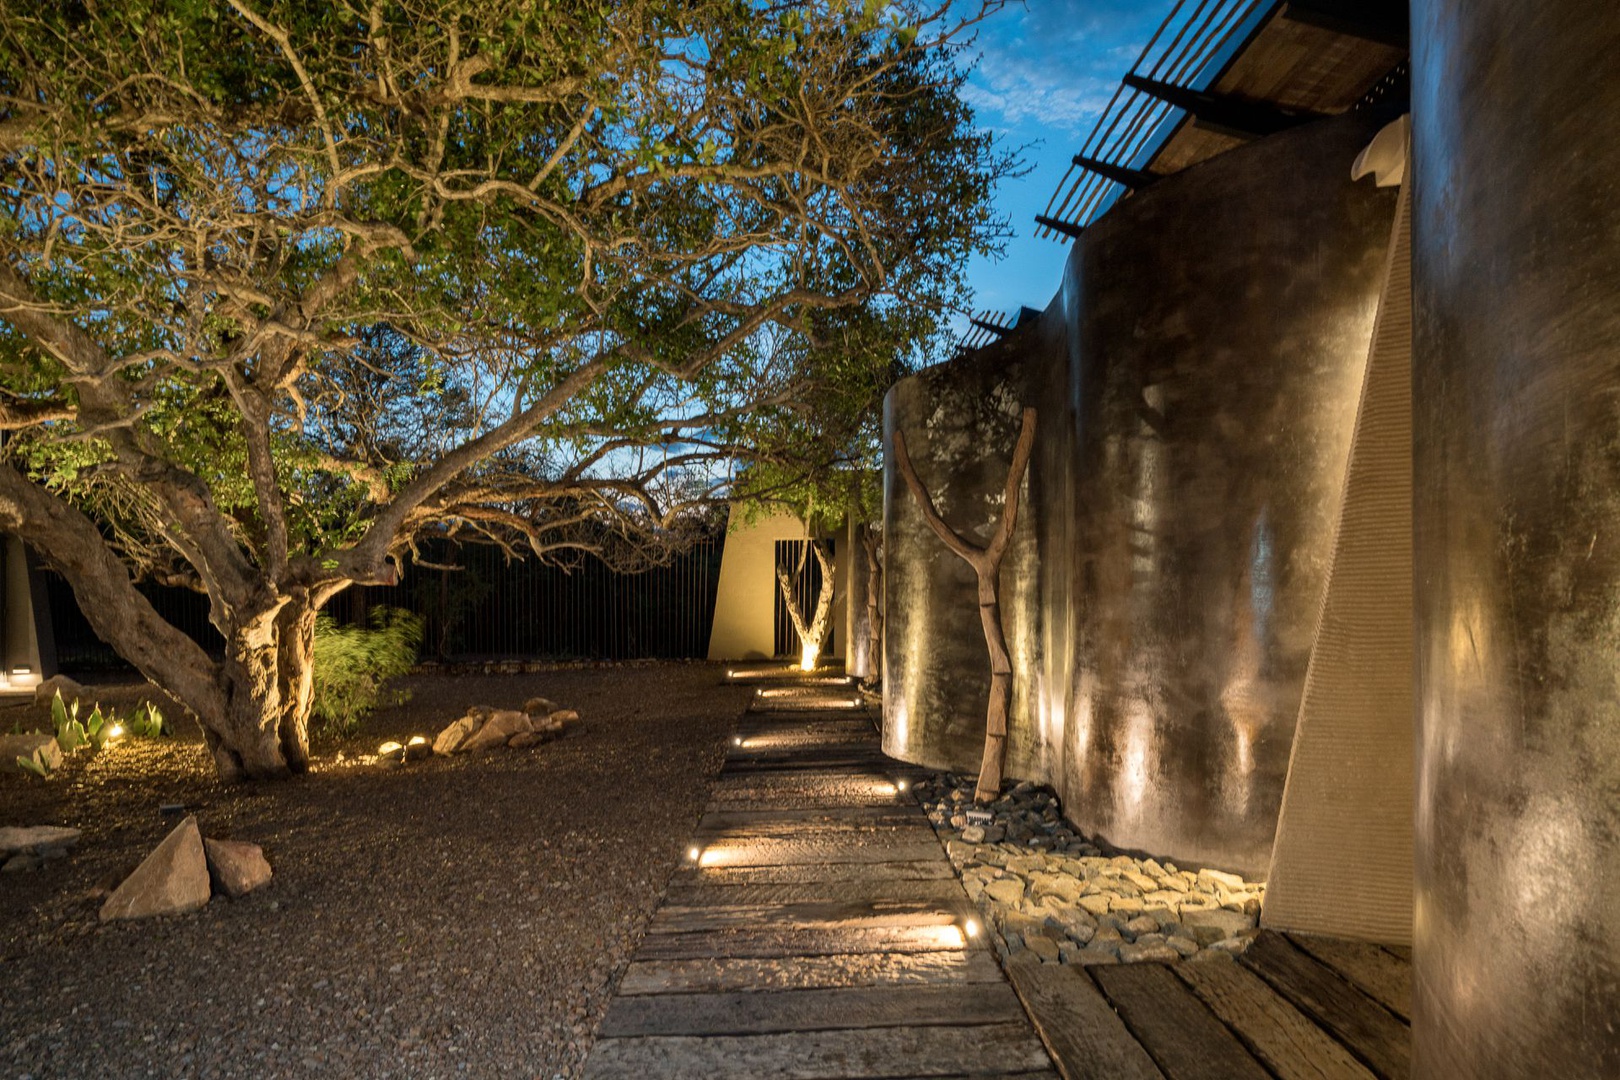 N’Wambu Safari Lodge : Where the Tree Whispers by the River